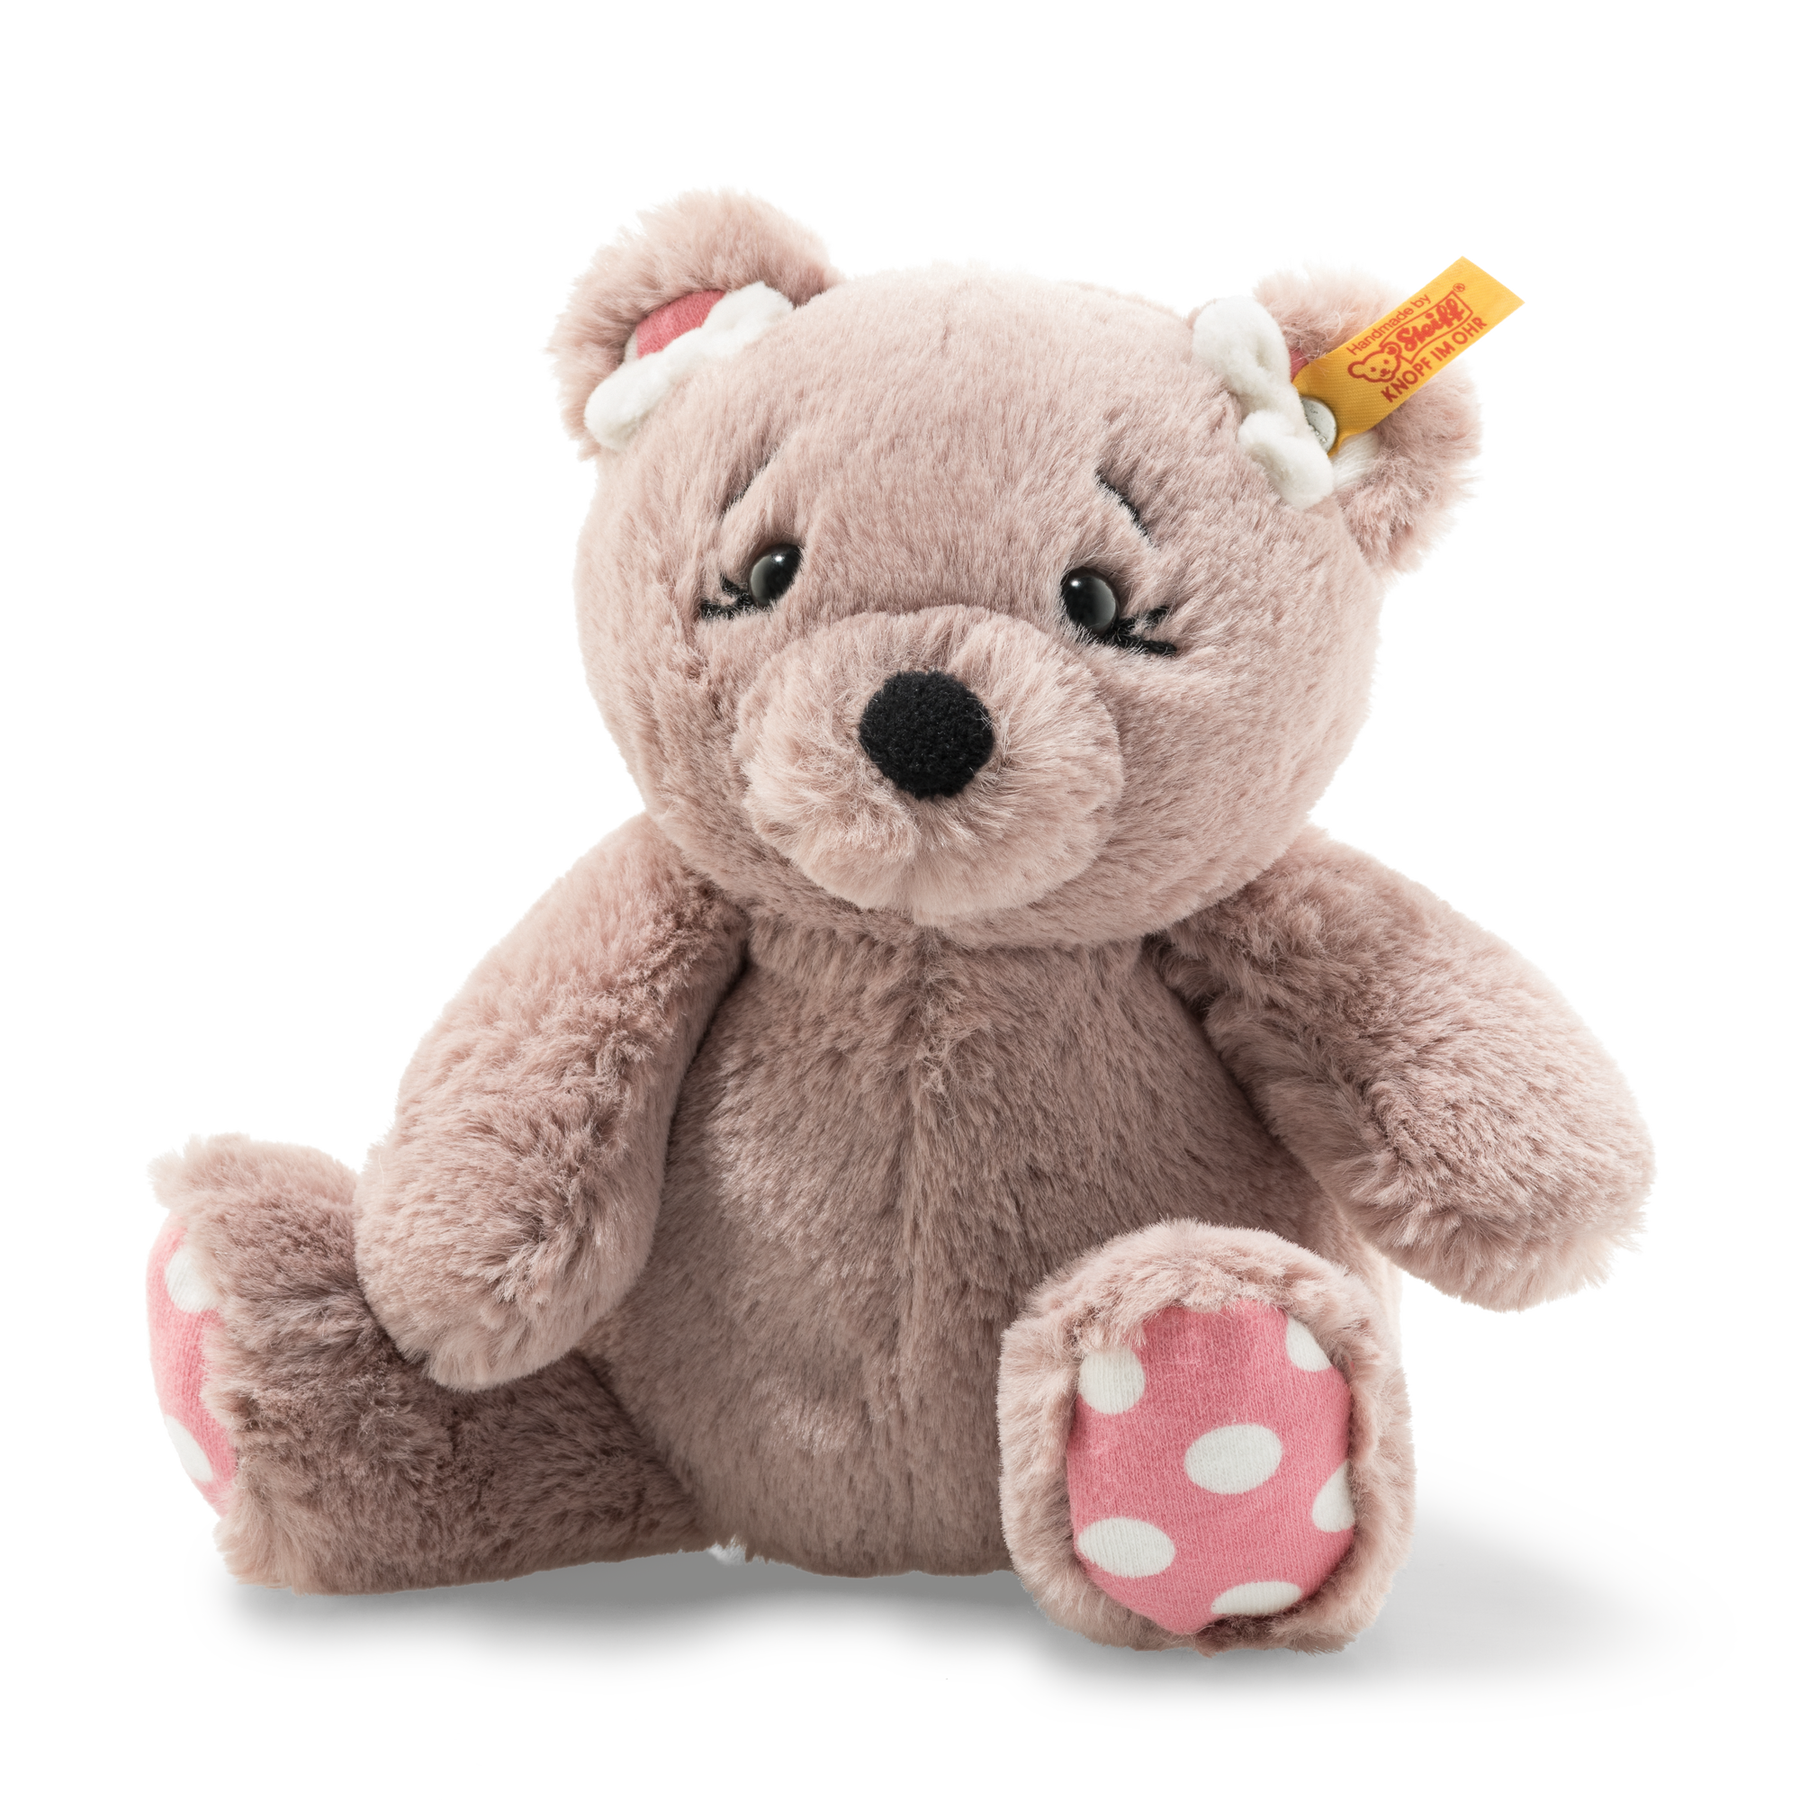 Soft Cuddly Friends Beatrice Teddy bear